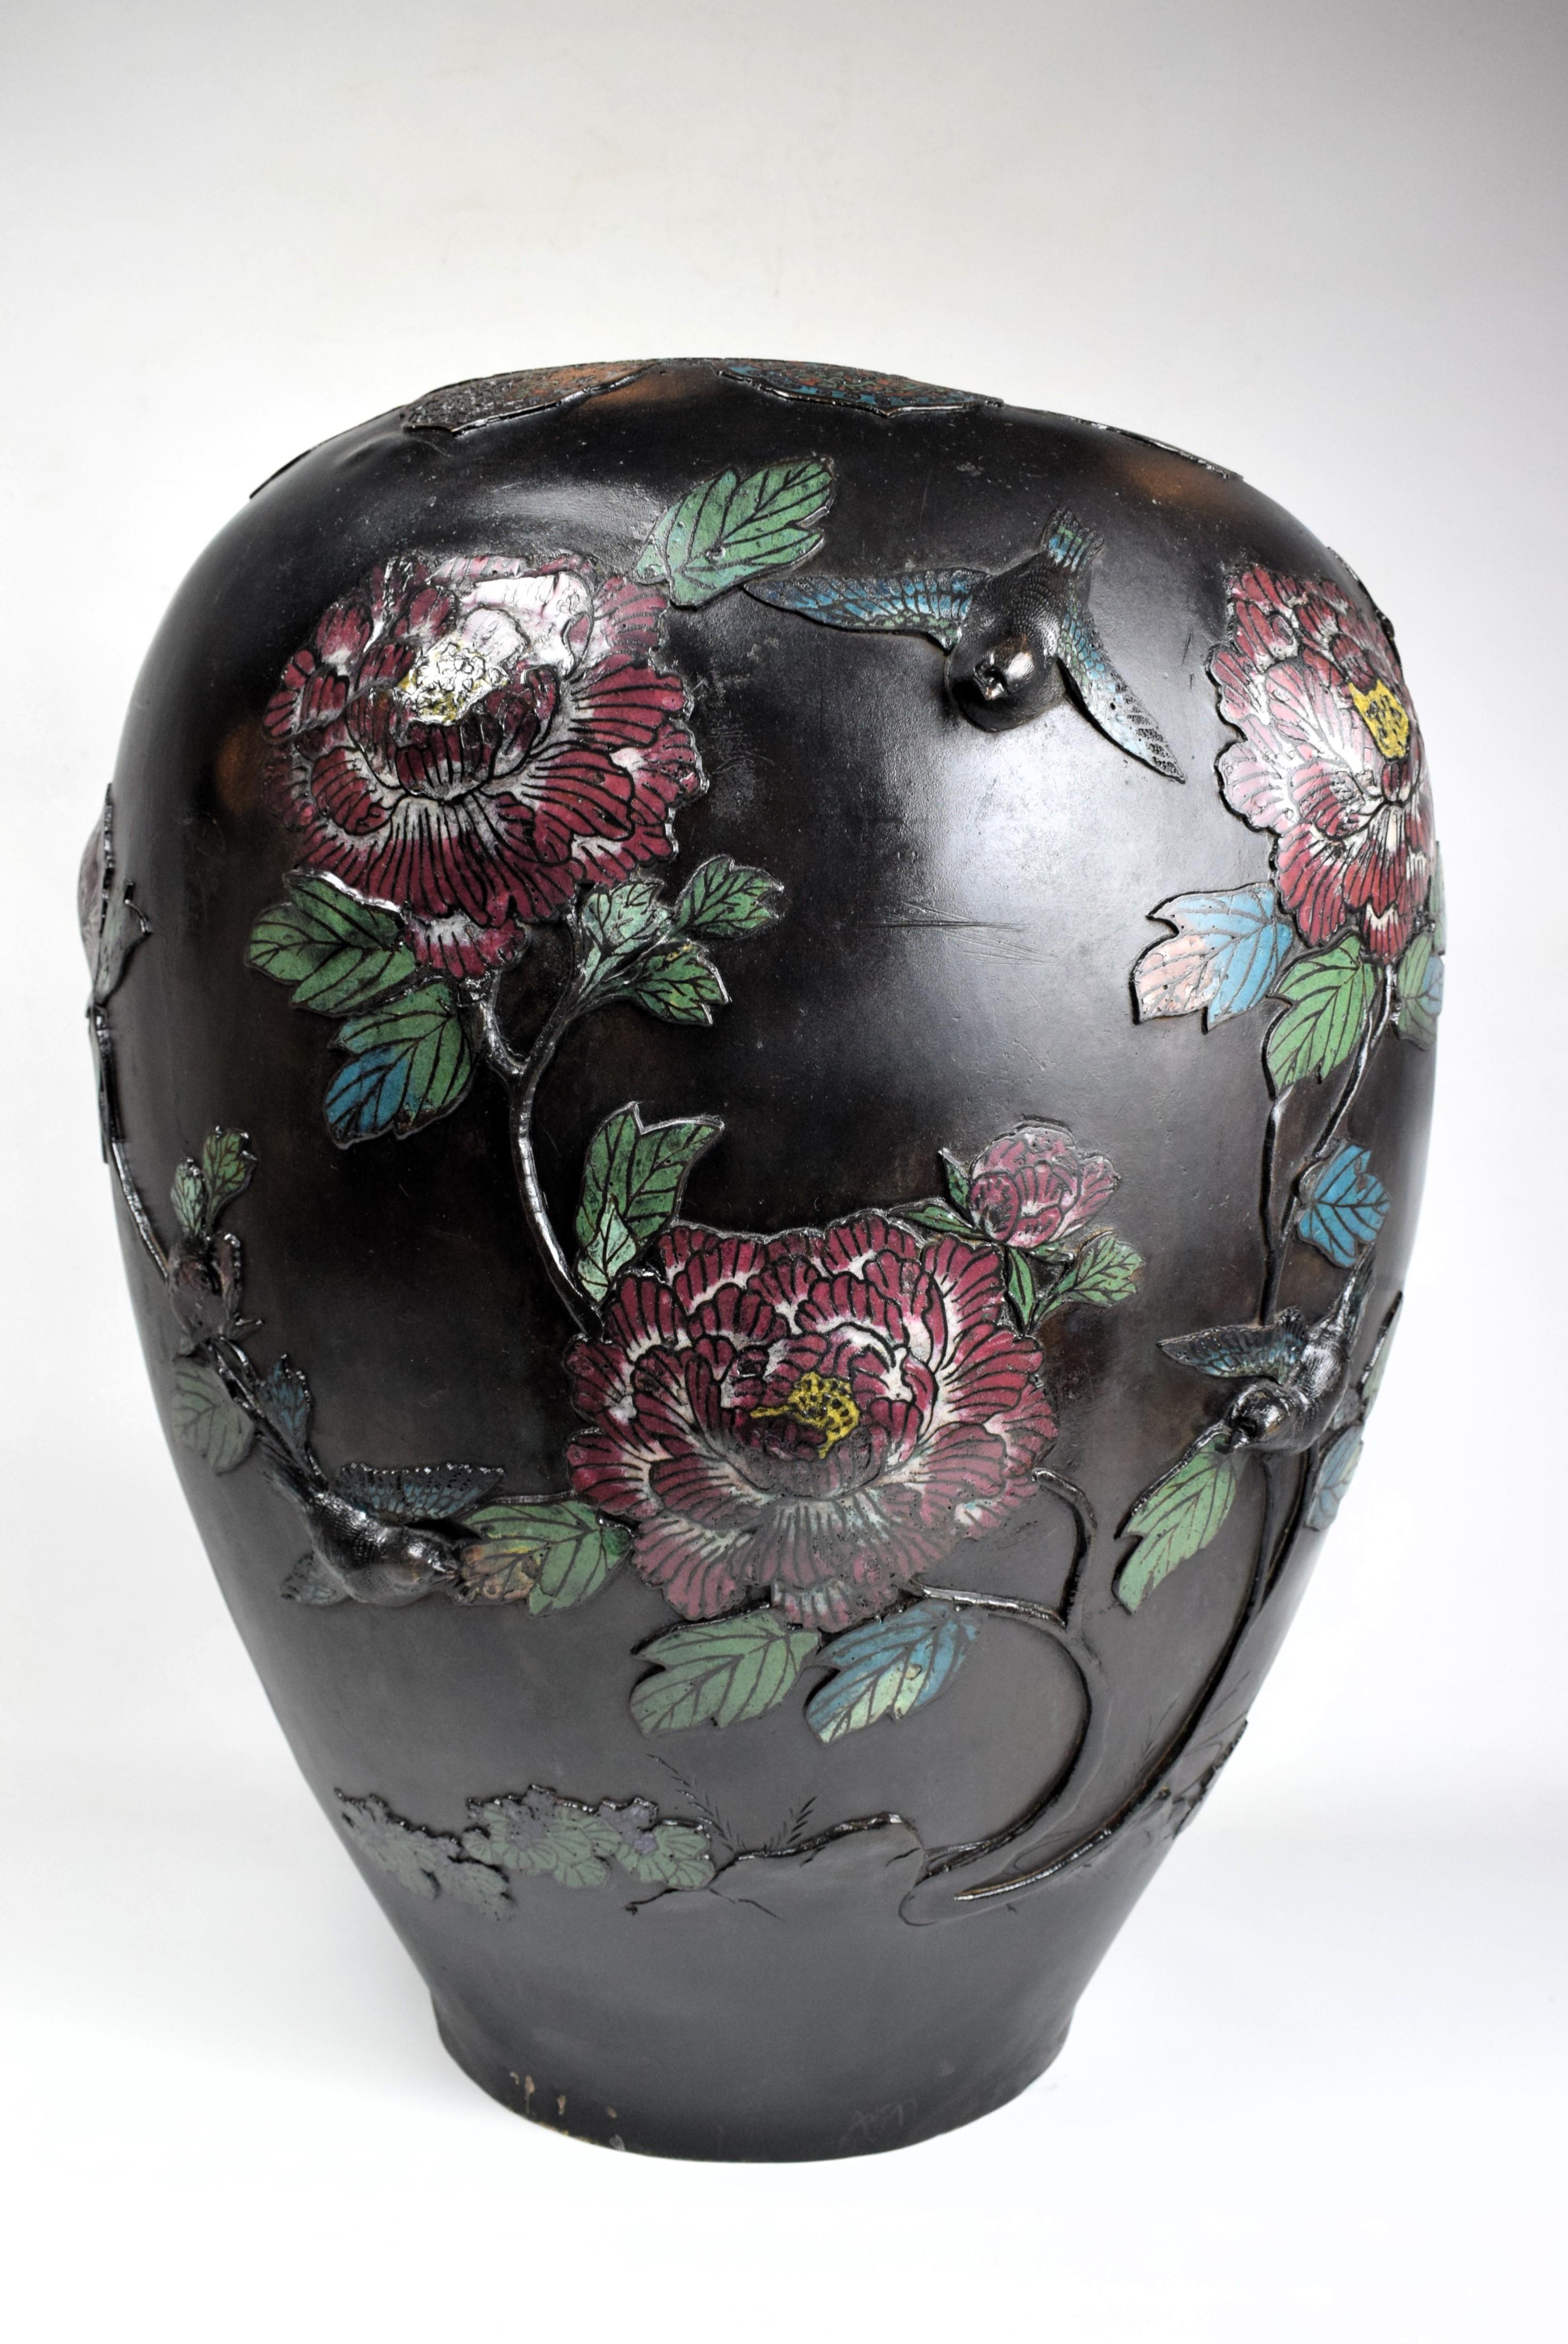 Große japanische Vase mit Bronzerelief, emailliert, Anfang 20.

Die Oberfläche der Vase ist mit aufwendigen Reliefs verziert, die ein wunderschönes Tableau aus Blumen und Vögeln darstellen. Die Reliefs sind sorgfältig ausgearbeitet und erzeugen